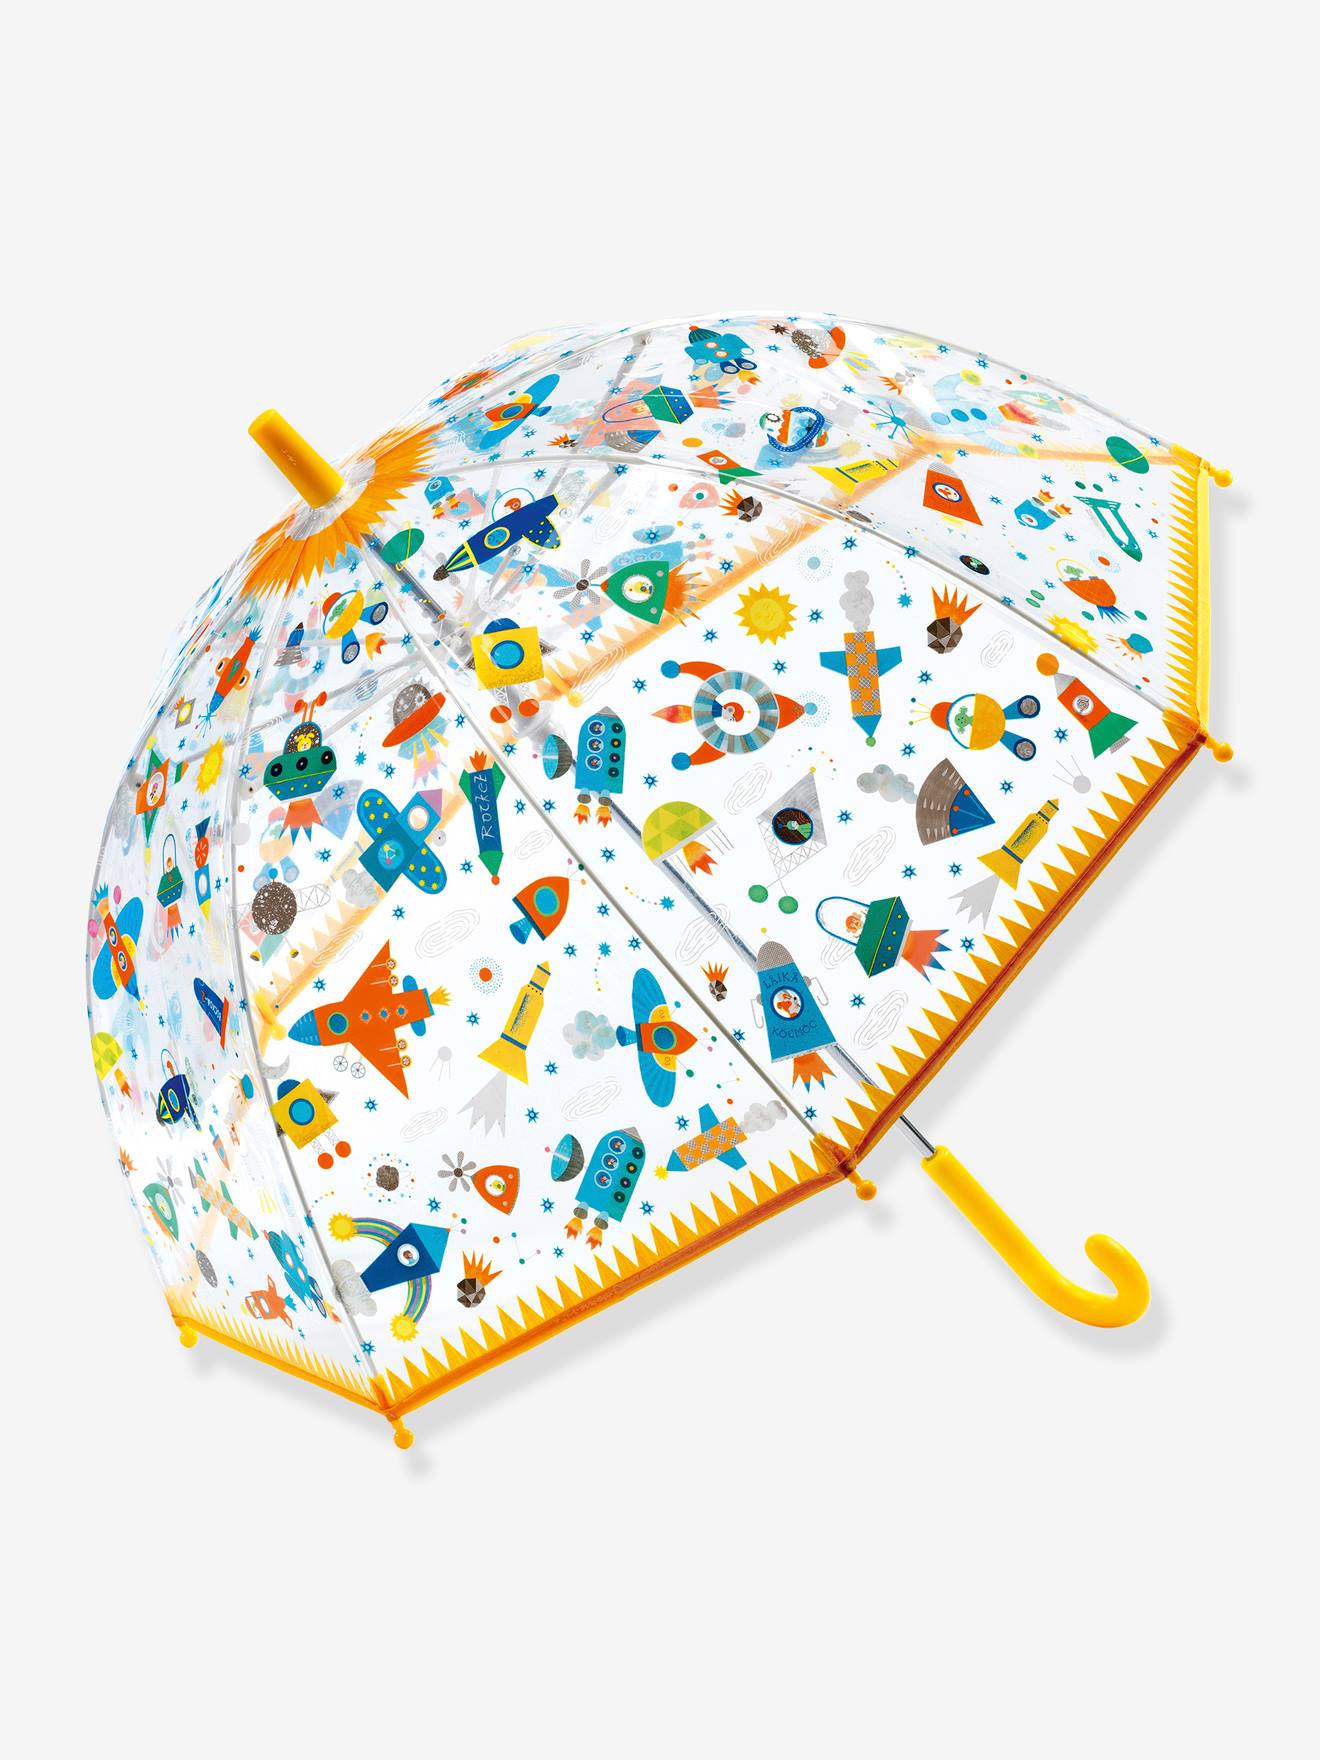 Parapluruimte - DJECO geel